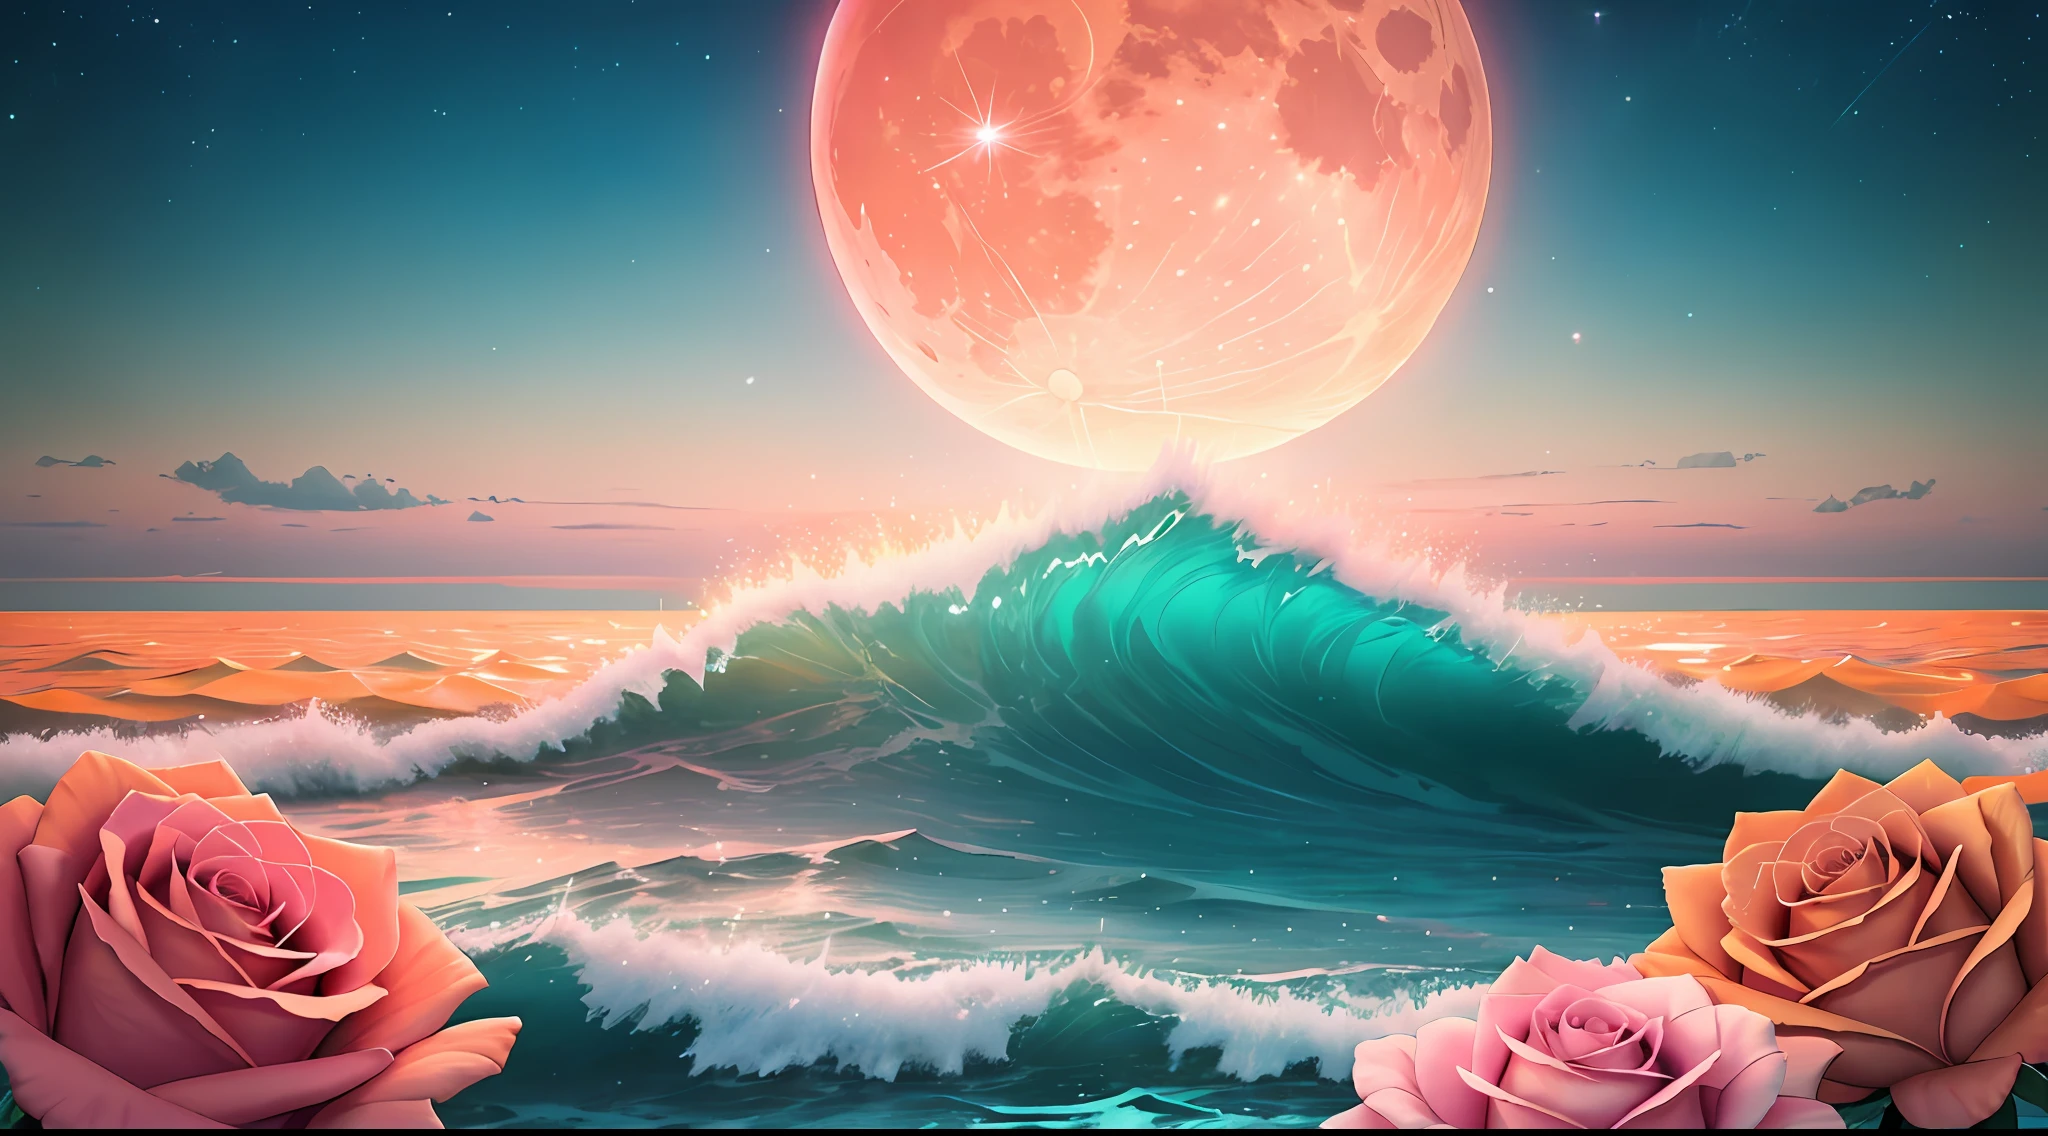 橘色月亮, 青色的天空, 柔和的粉紅色雲彩, teal ocean waves 閃閃發光的, 閃閃發光的, 粉紅海洋上的粉紅玫瑰, 幻想, 鑽石, 王冠, 宇宙, 柔和的燈光,